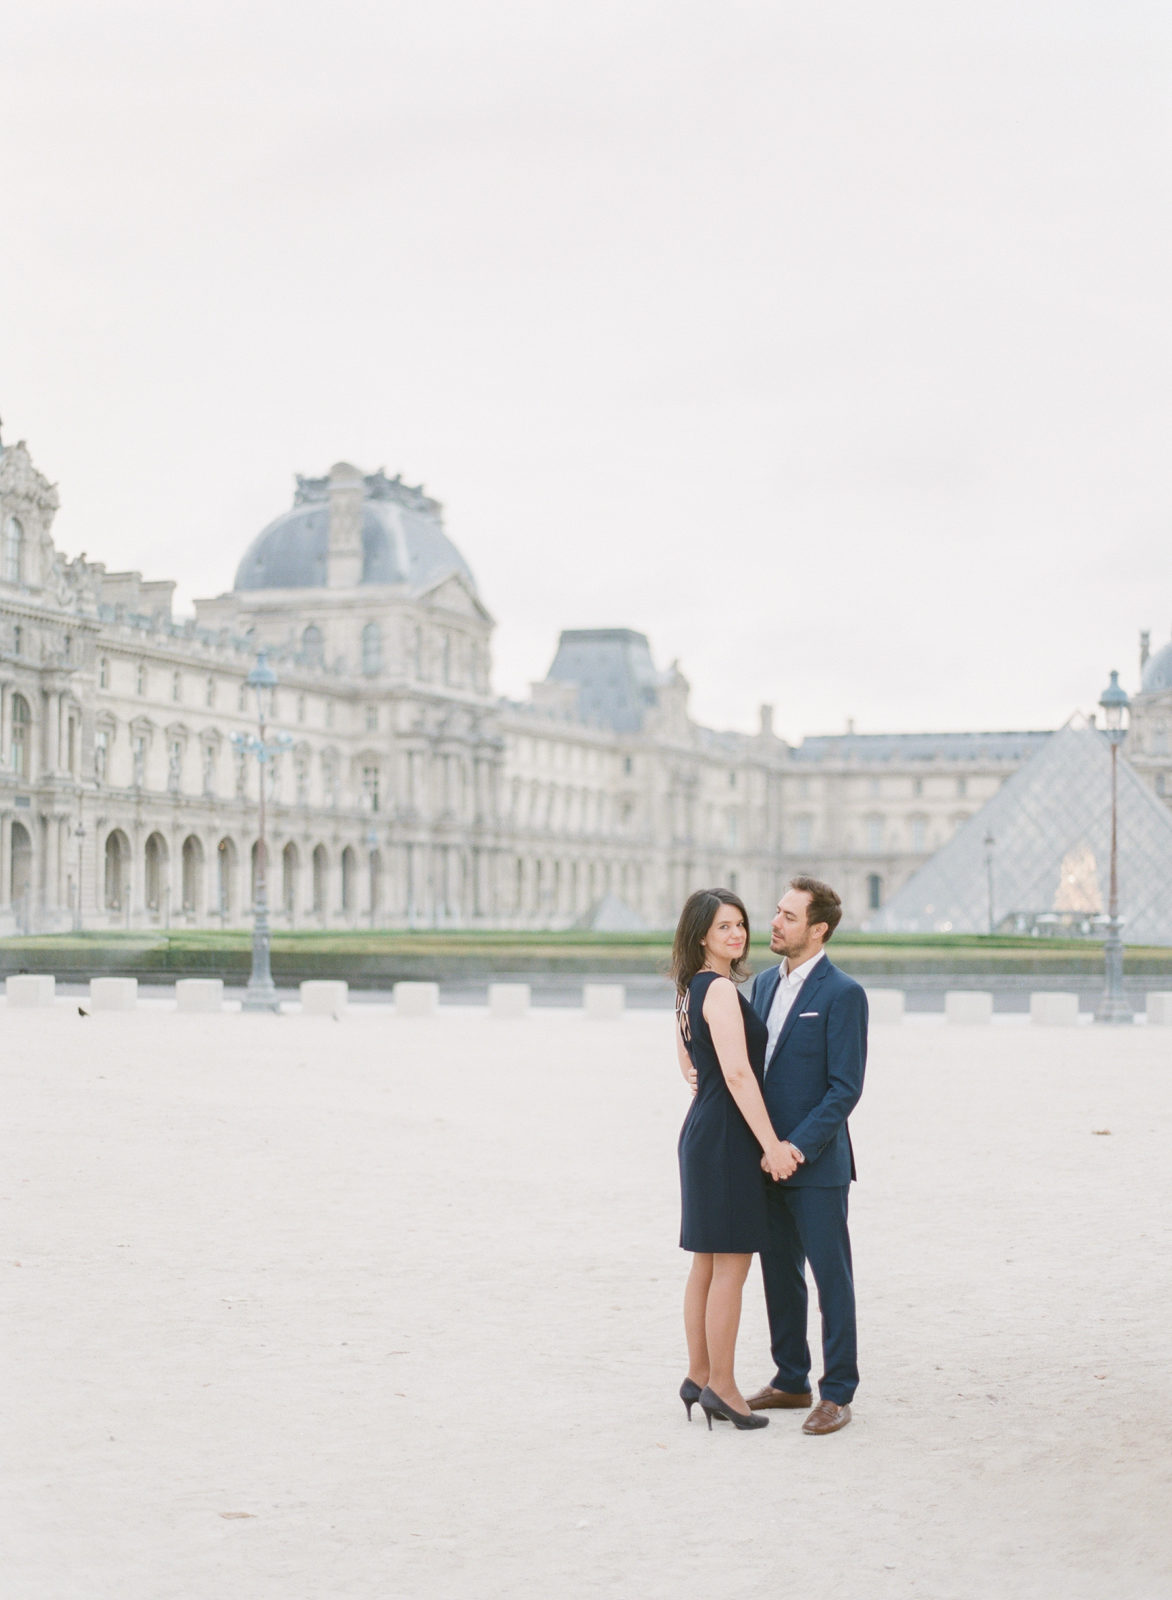 Paris Engagement Photos | Paris Wedding Photography | Paris Film Photographer | France Wedding Photography | Molly Carr Photography | Paris Engagement Photo Locations | Couple at Le Louvre